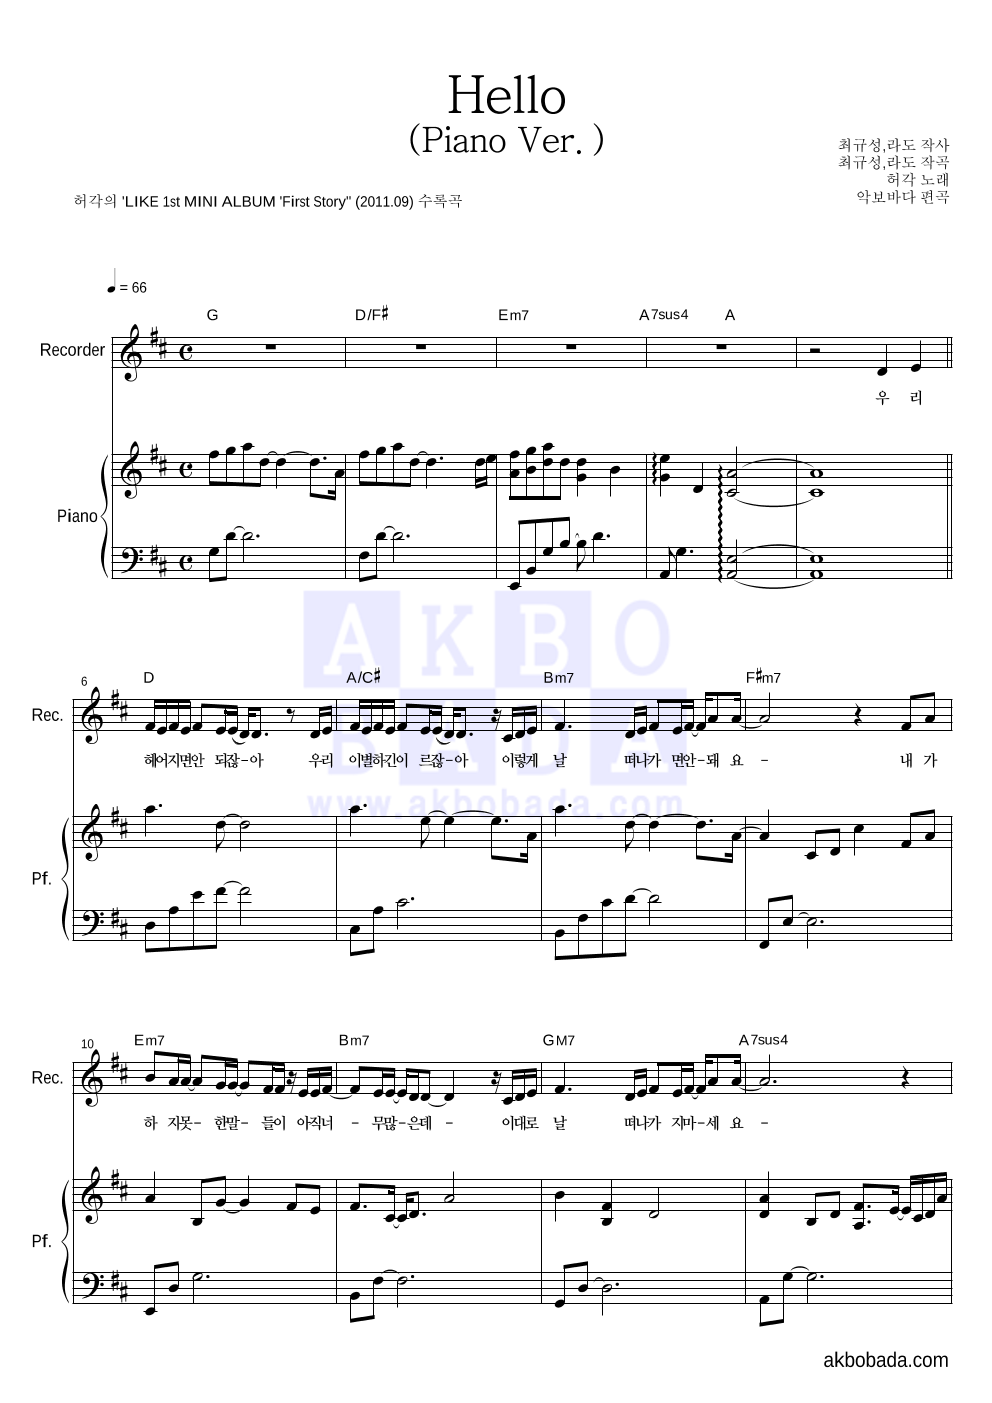 허각 - Hello (Piano Ver.) 리코더&피아노 악보 